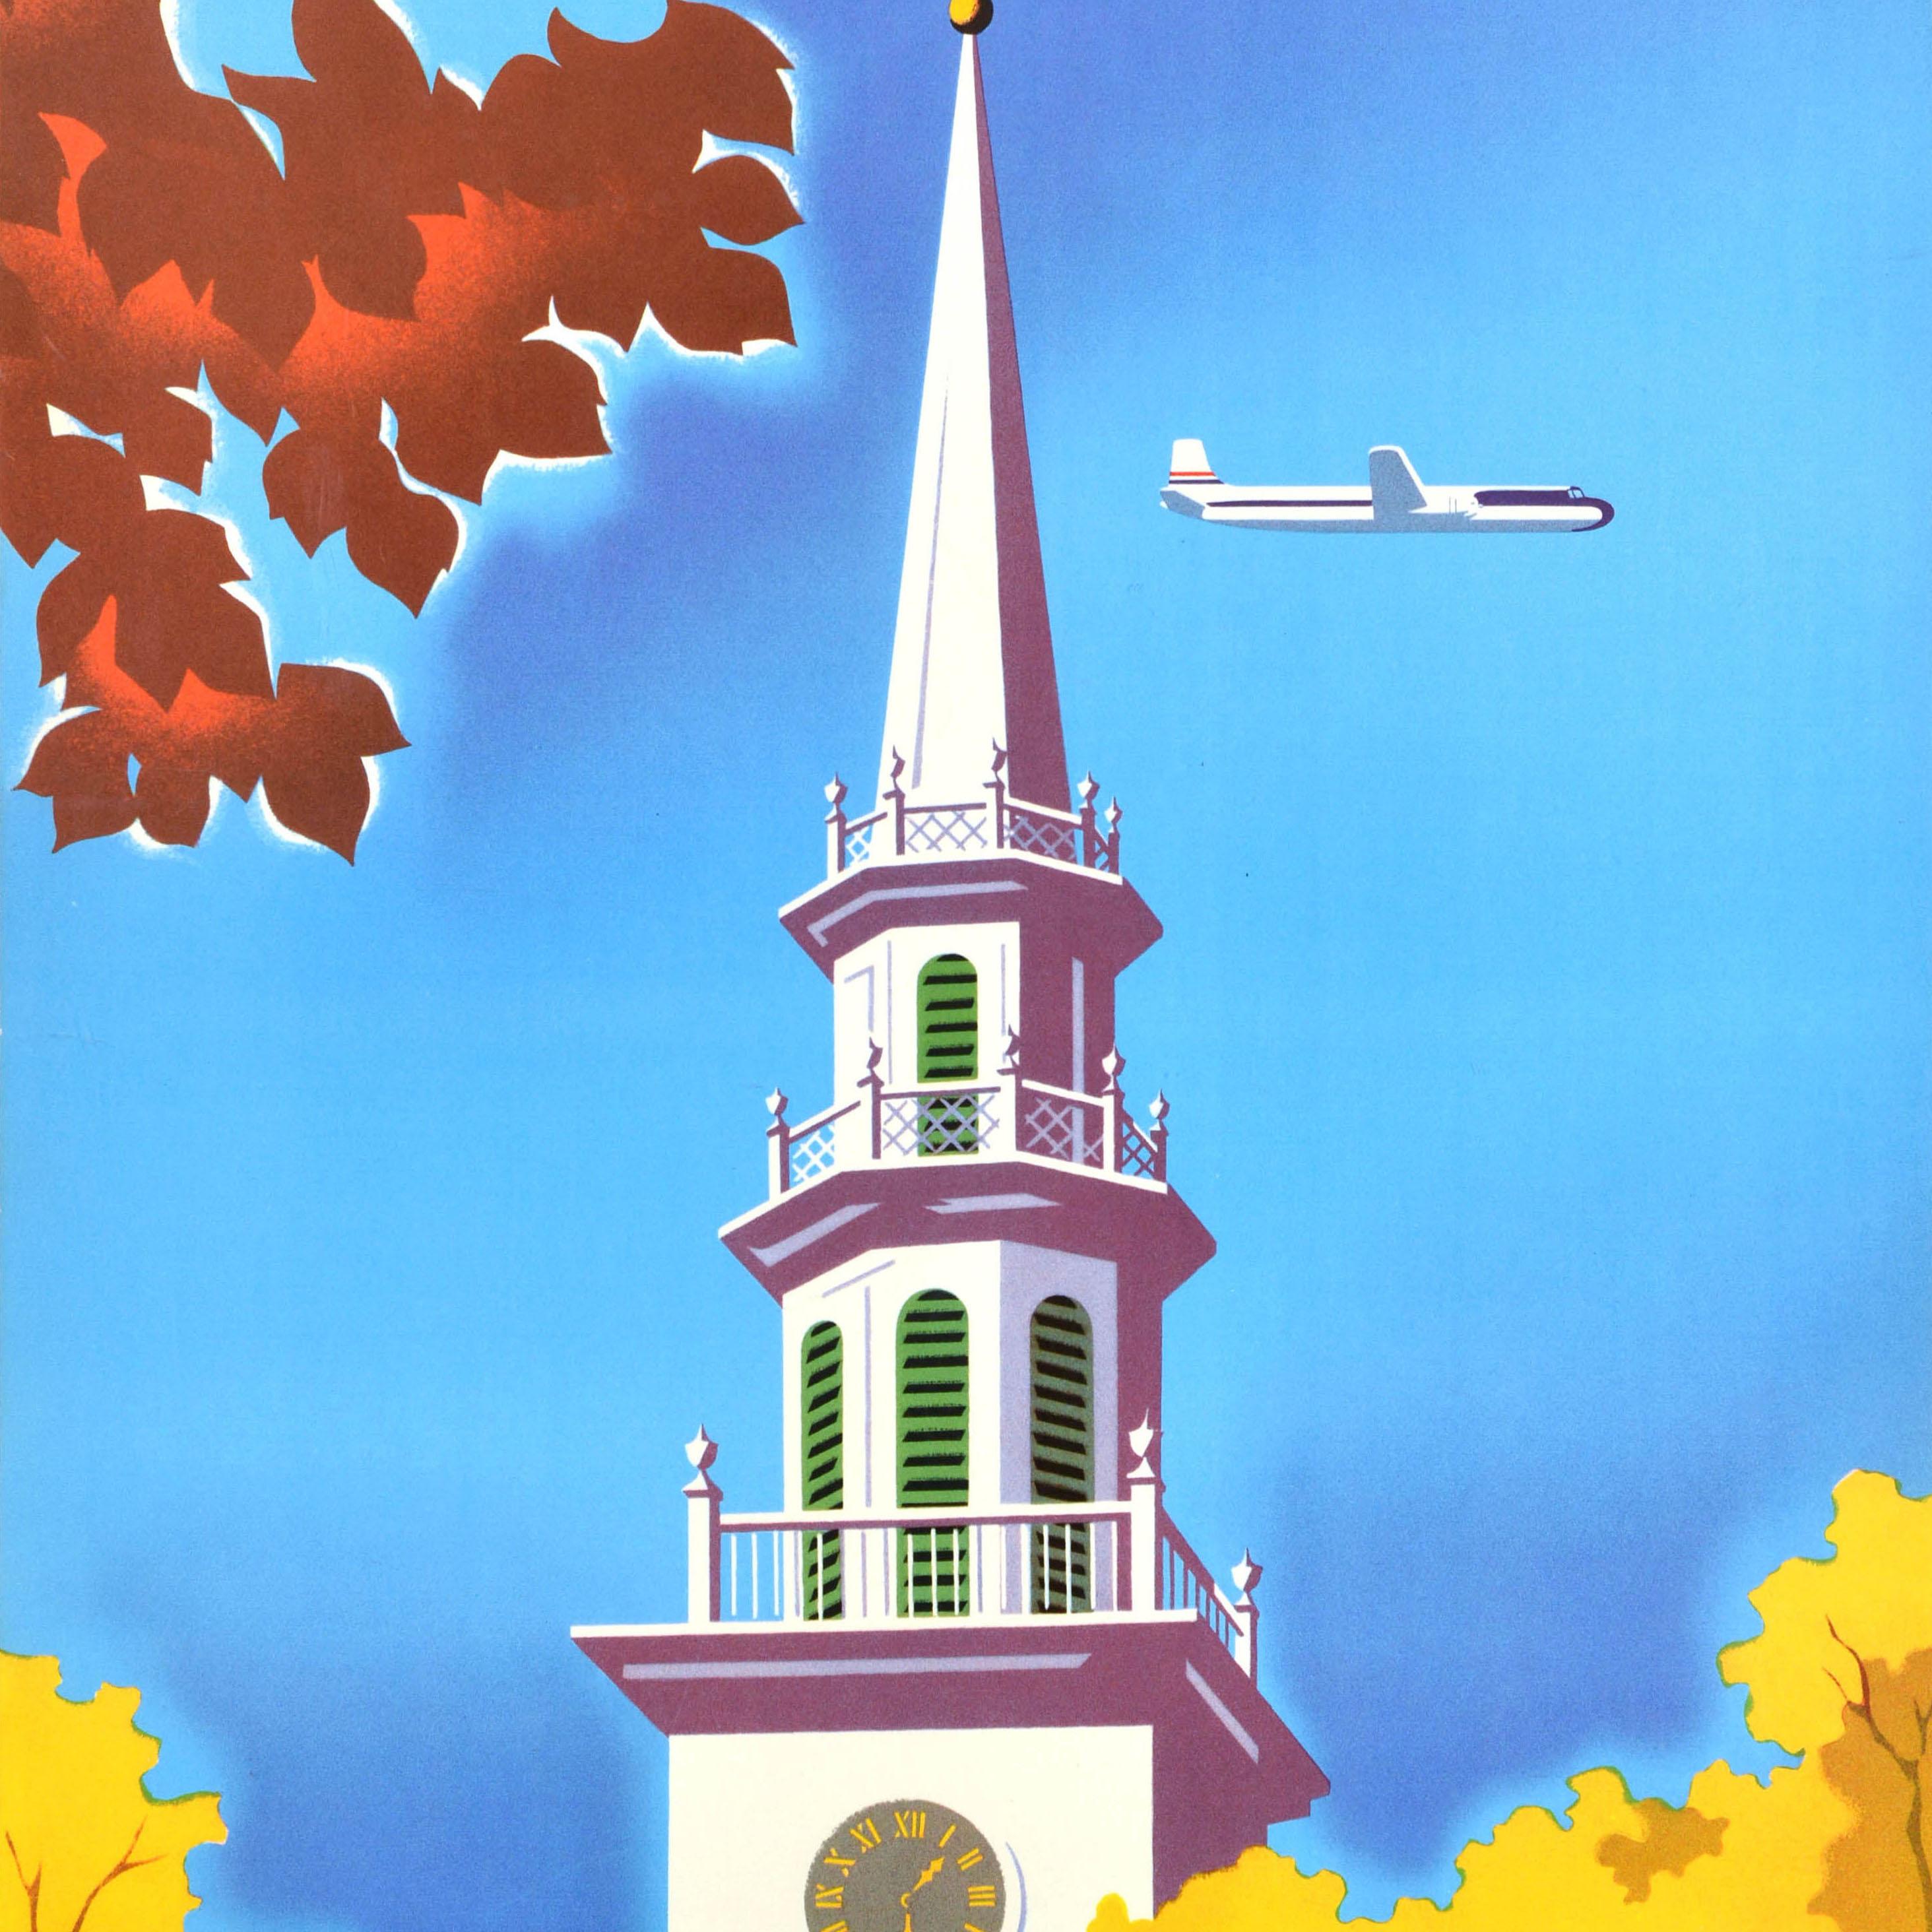 Affiche publicitaire originale pour United Air Lines New England, réalisée par le graphiste autrichien Joseph Binder (1898-1972), représentant un avion volant derrière une tour d'horloge encadrée par des arbres aux feuilles automnales brunes et